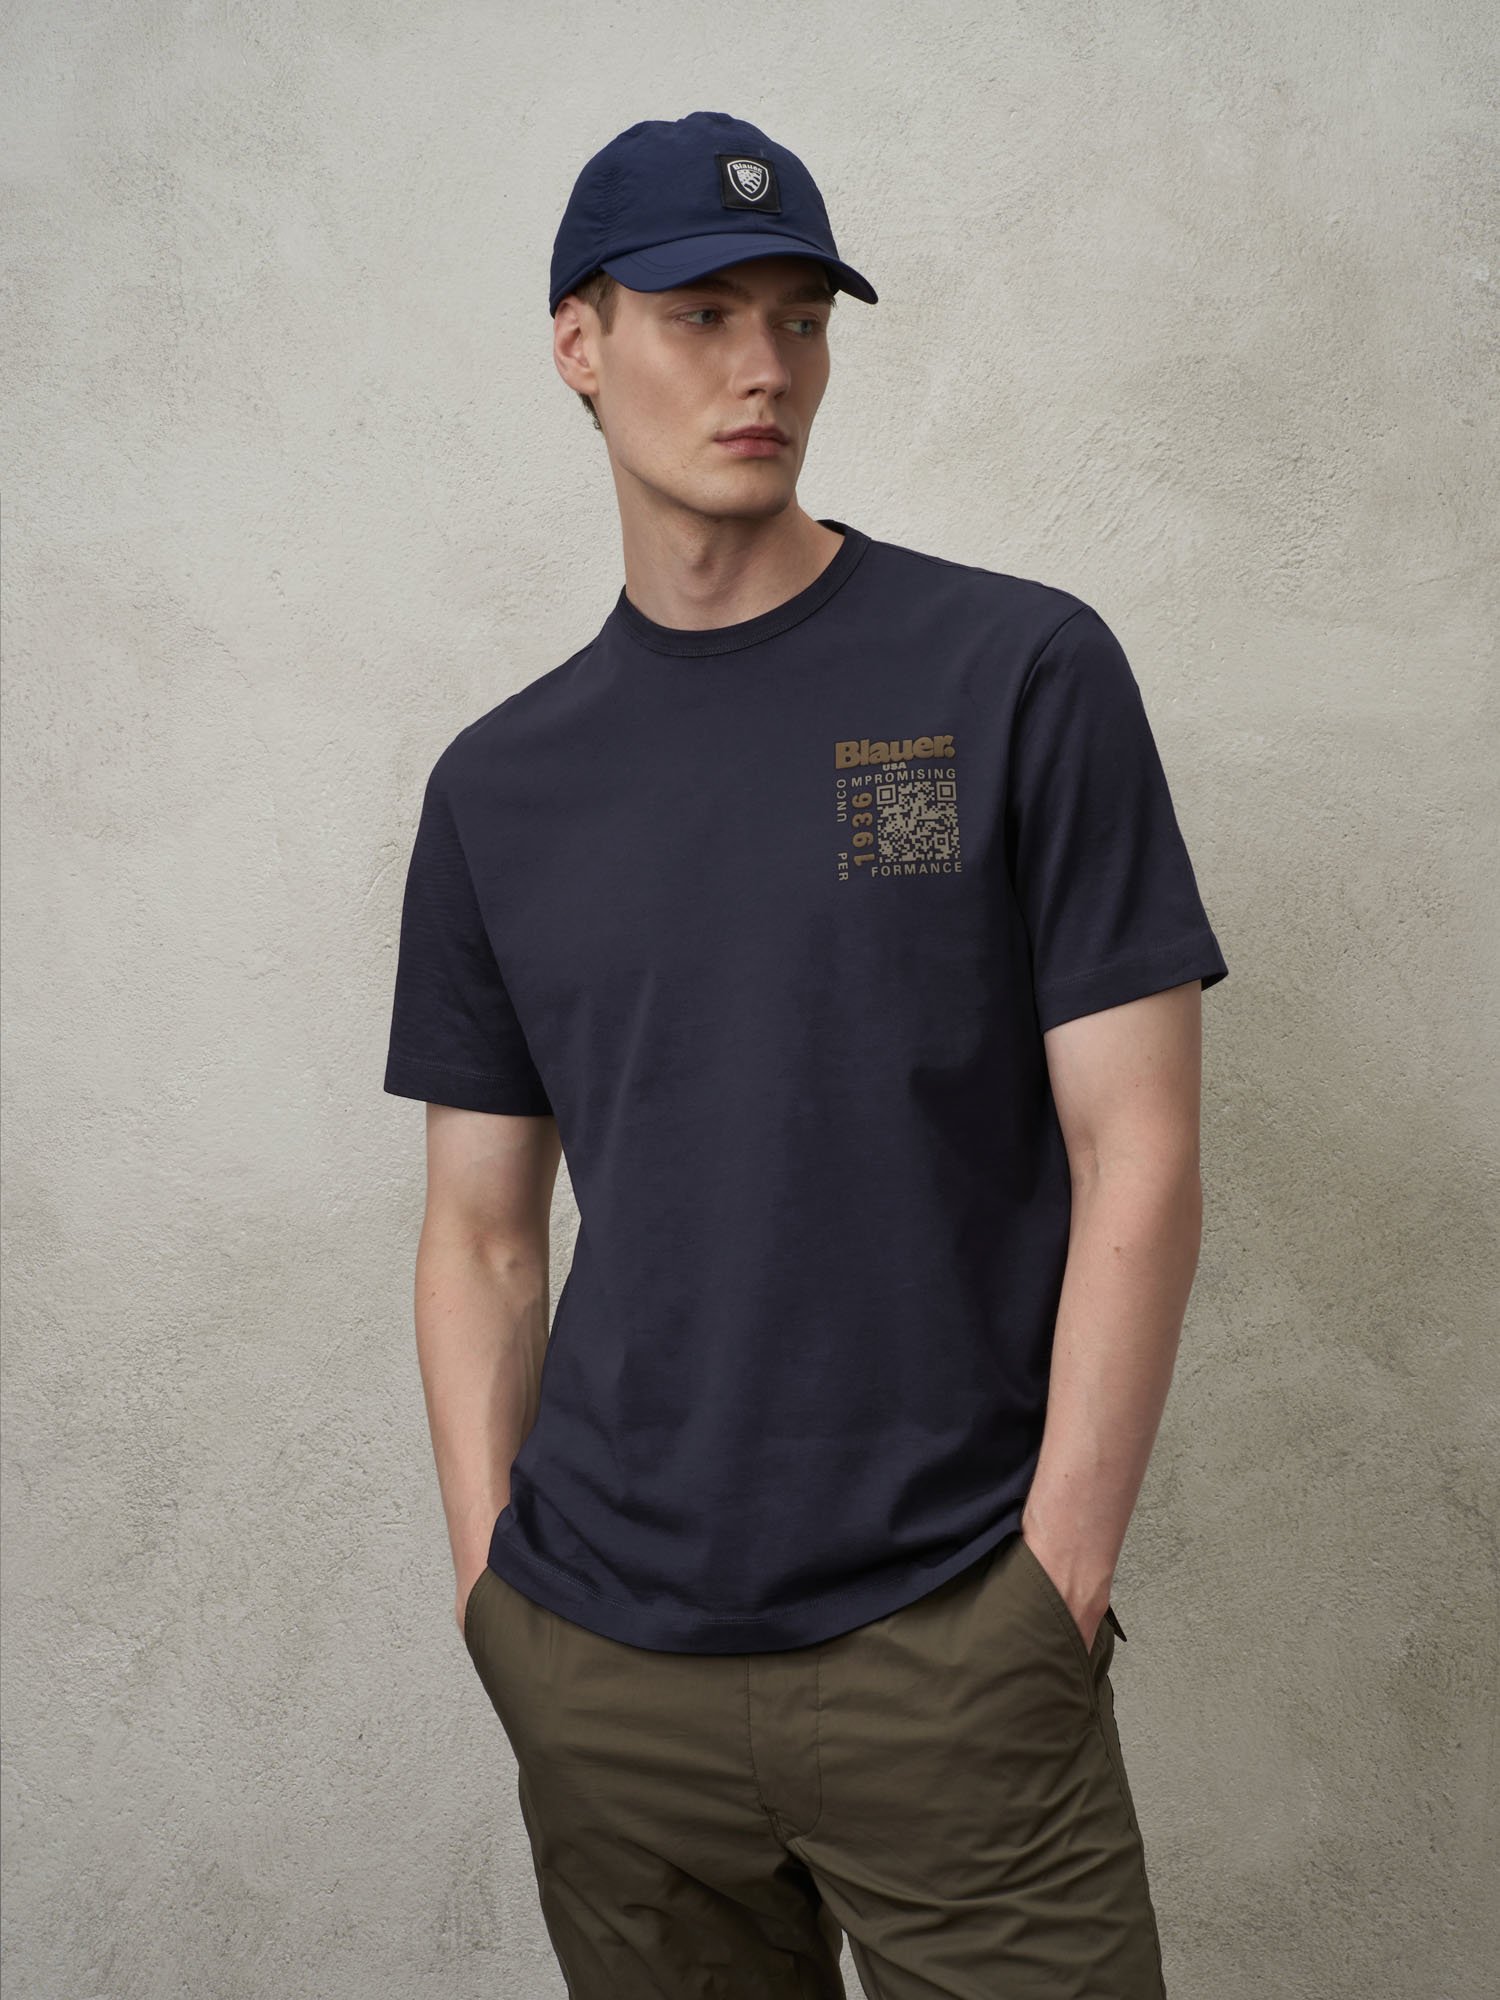 T-shirts's Short Sleeve T-Shirt | Blauer ®